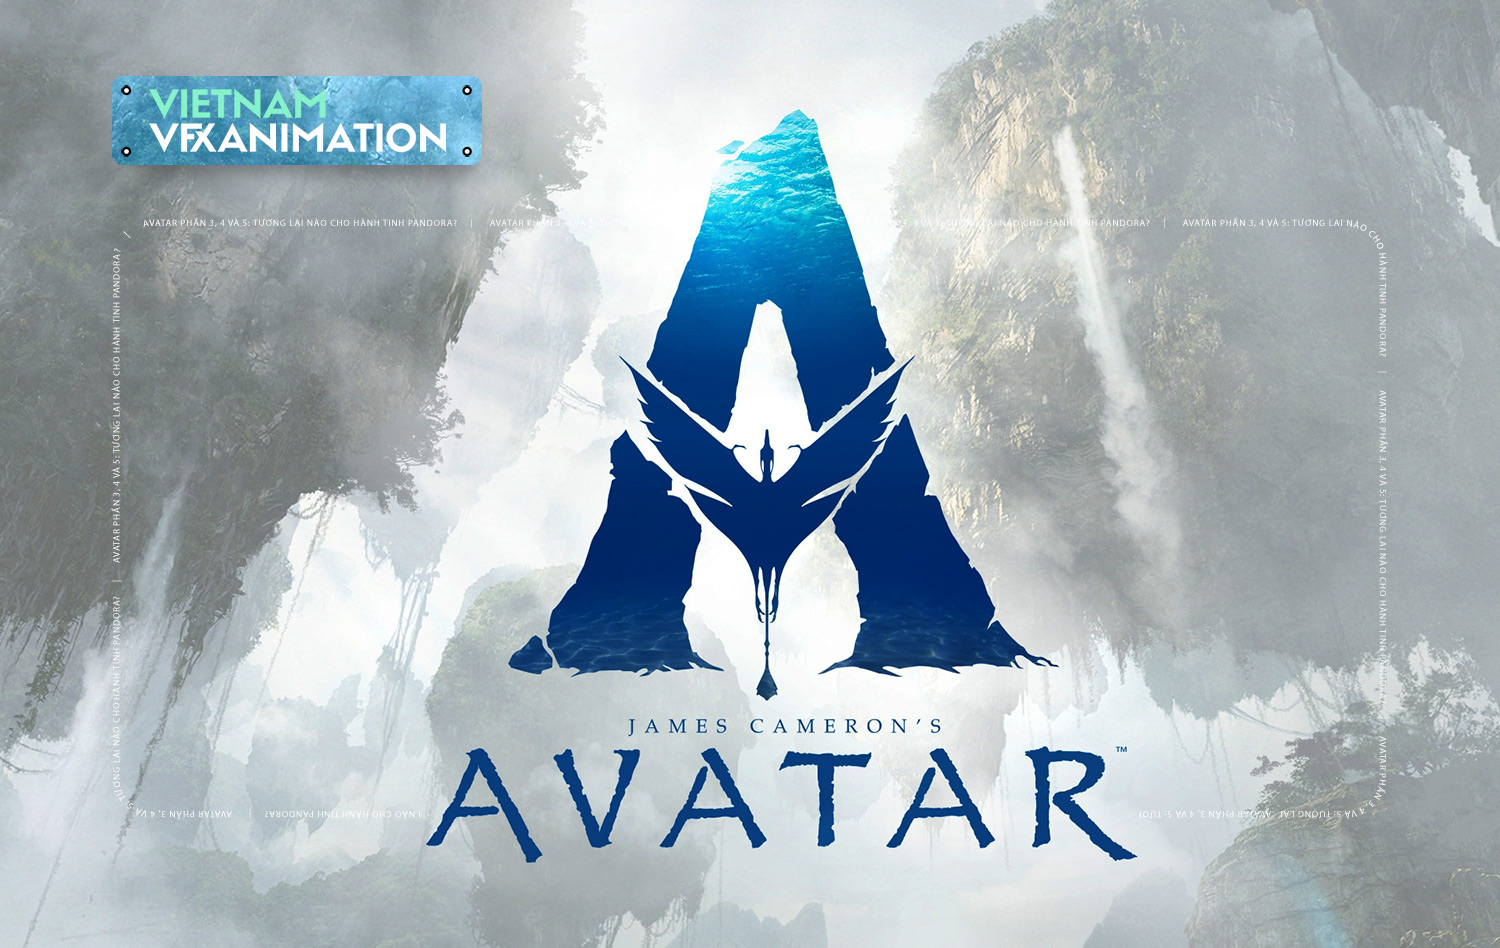 Avatar 2  Mở ra một kỉ nguyên mới cho công nghệ điện ảnh  Vietcetera